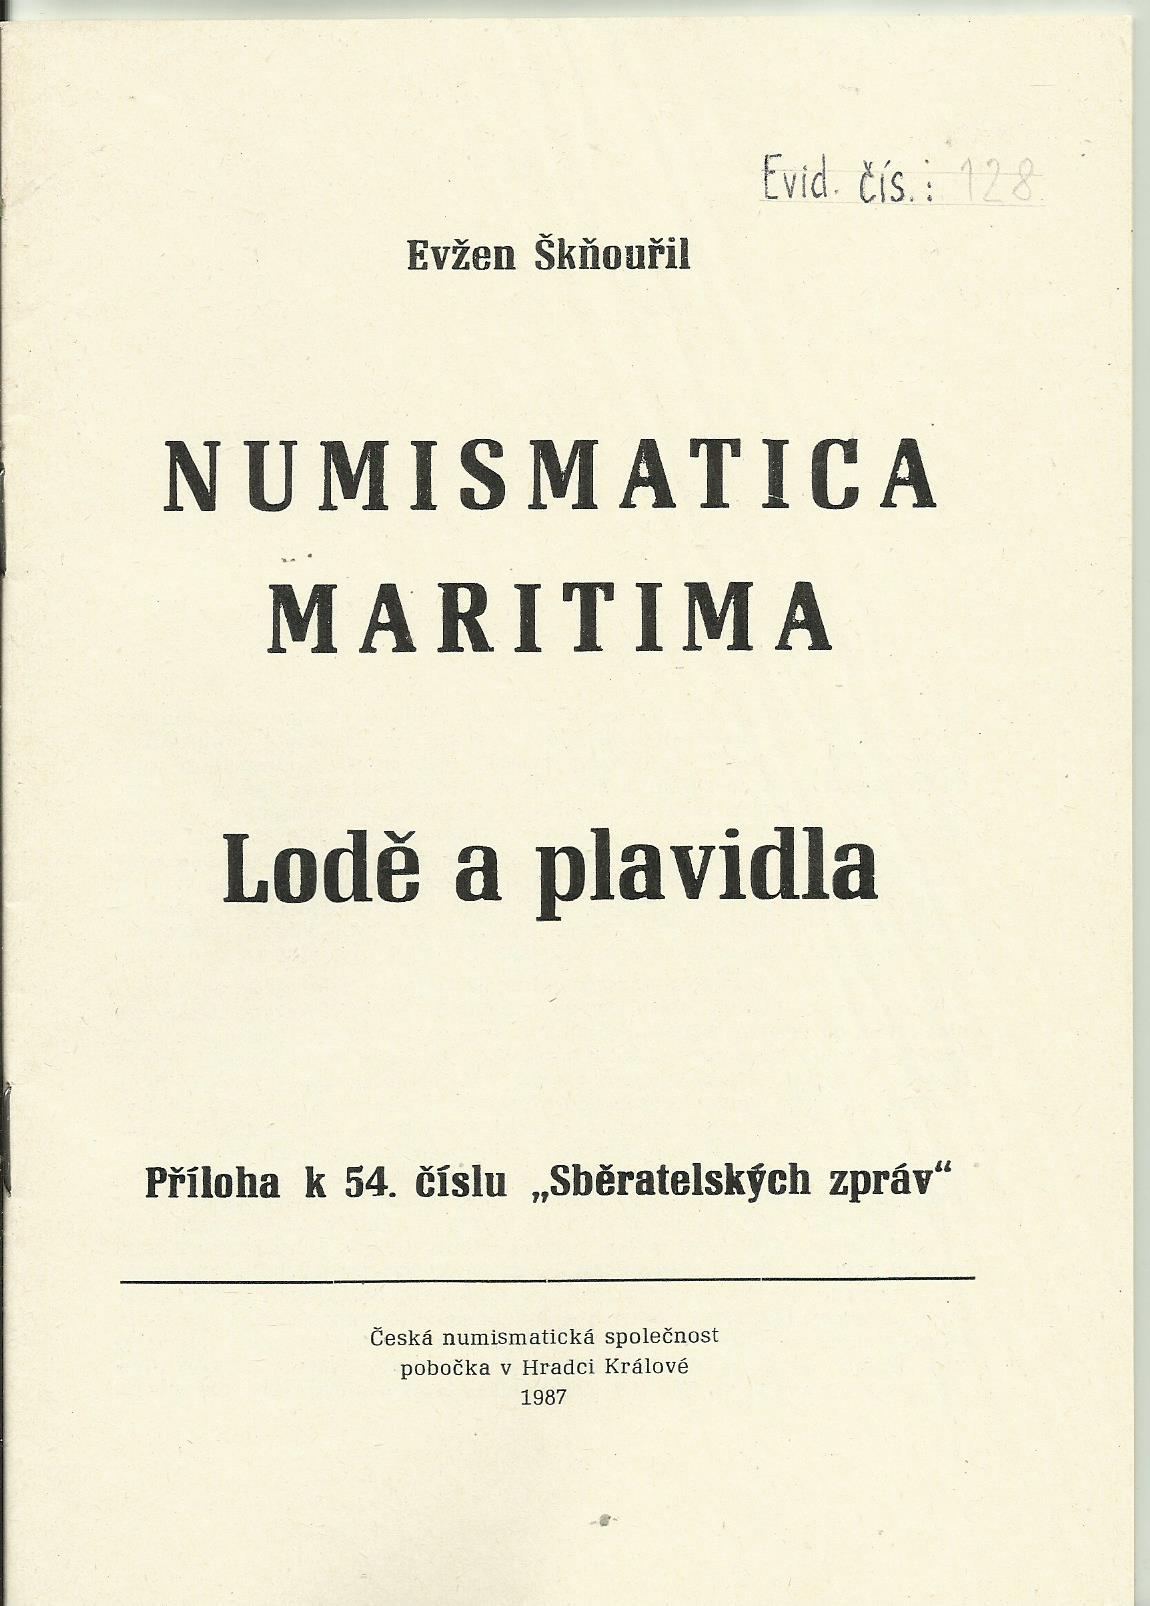 Numismatica Maritima  - Lodě a plavidla